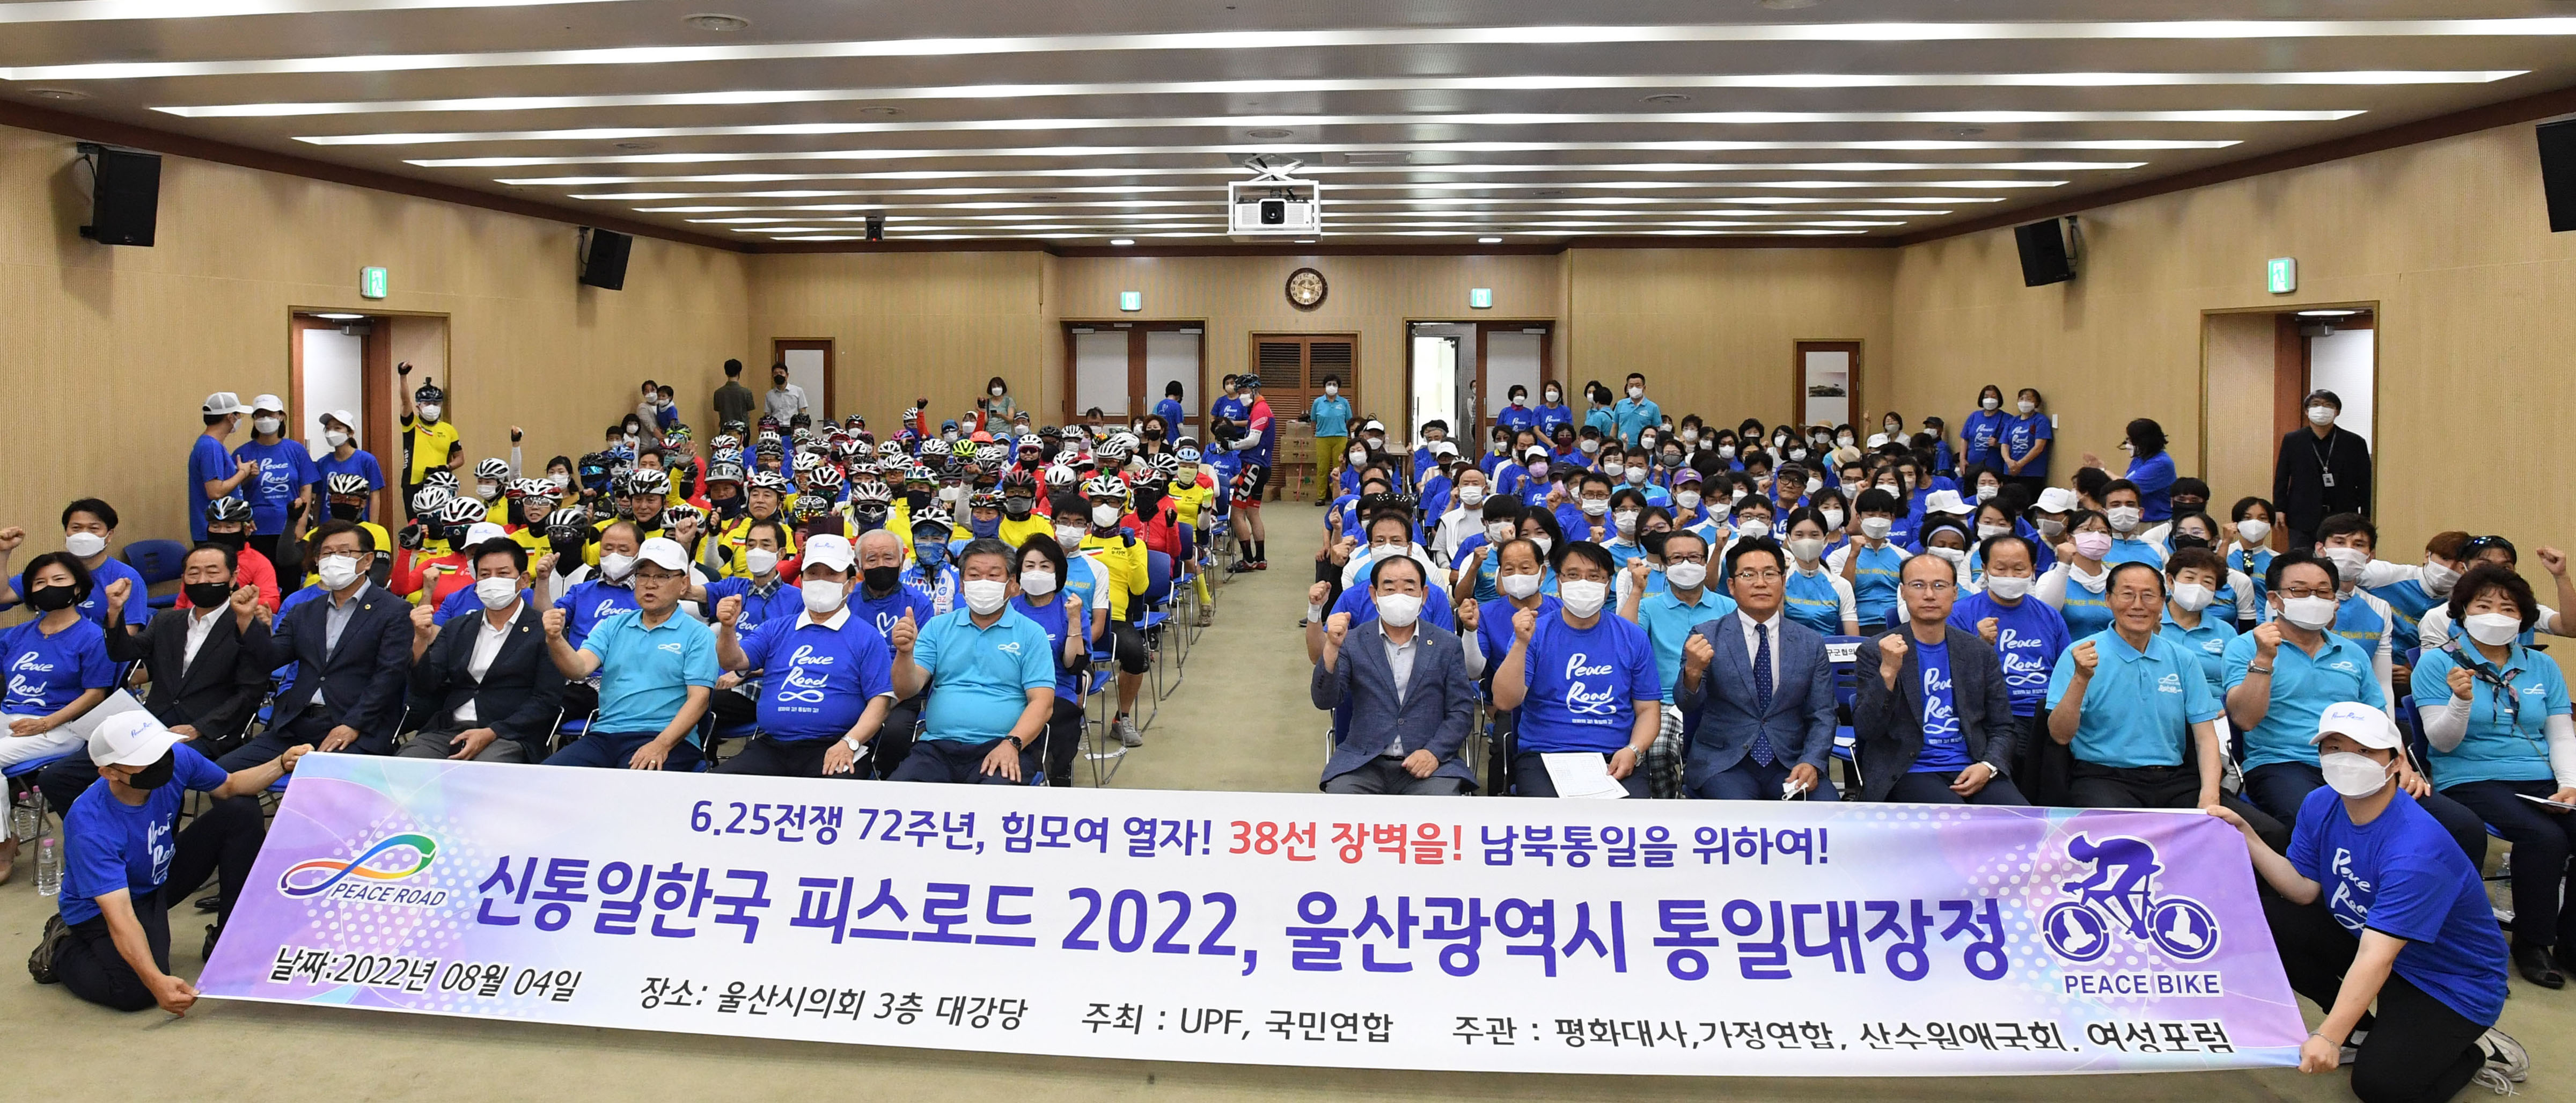 One Korea 피스로드 2022 통일대장정7